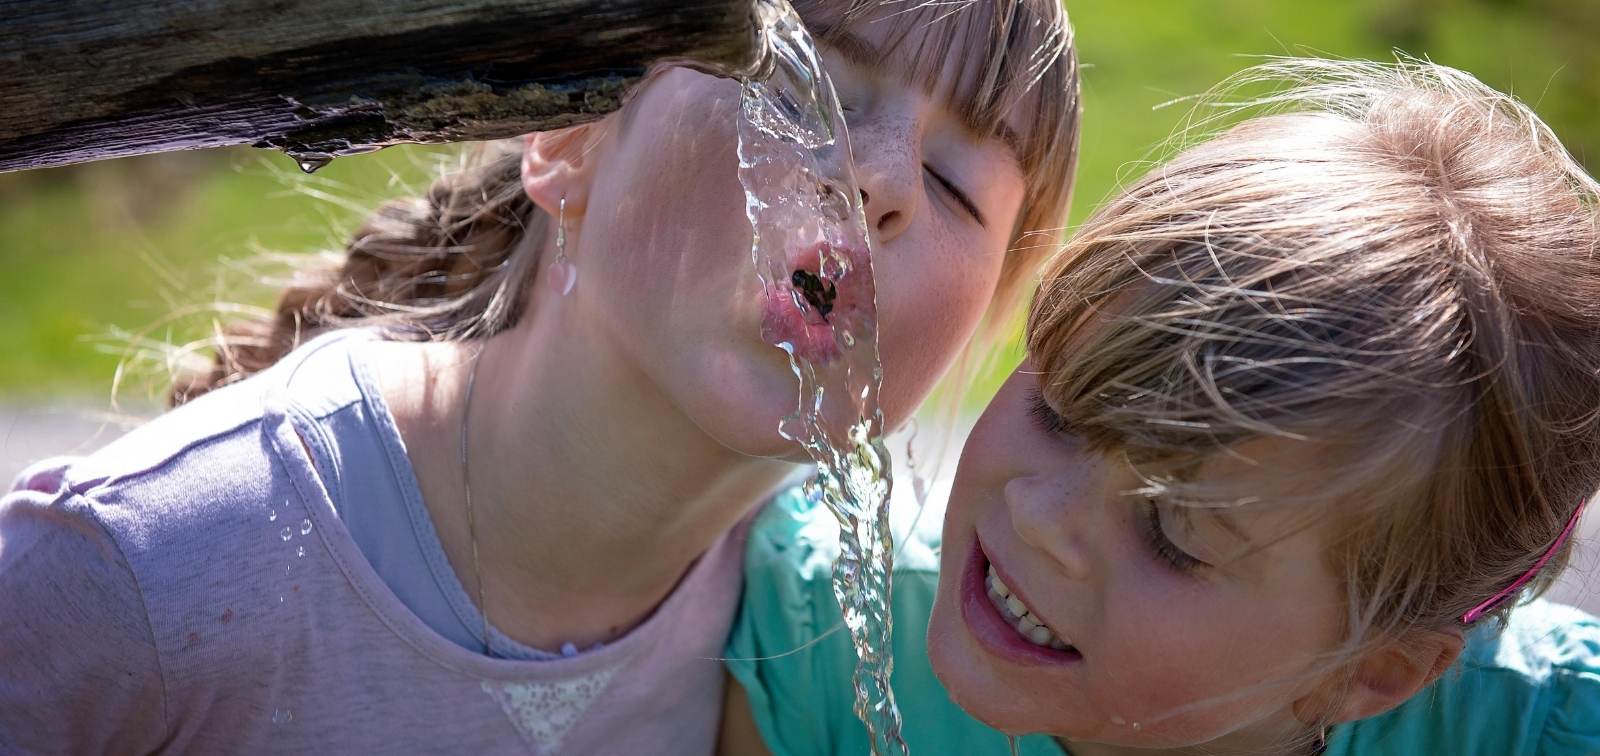 Dues nenes beuen aigua d'una font